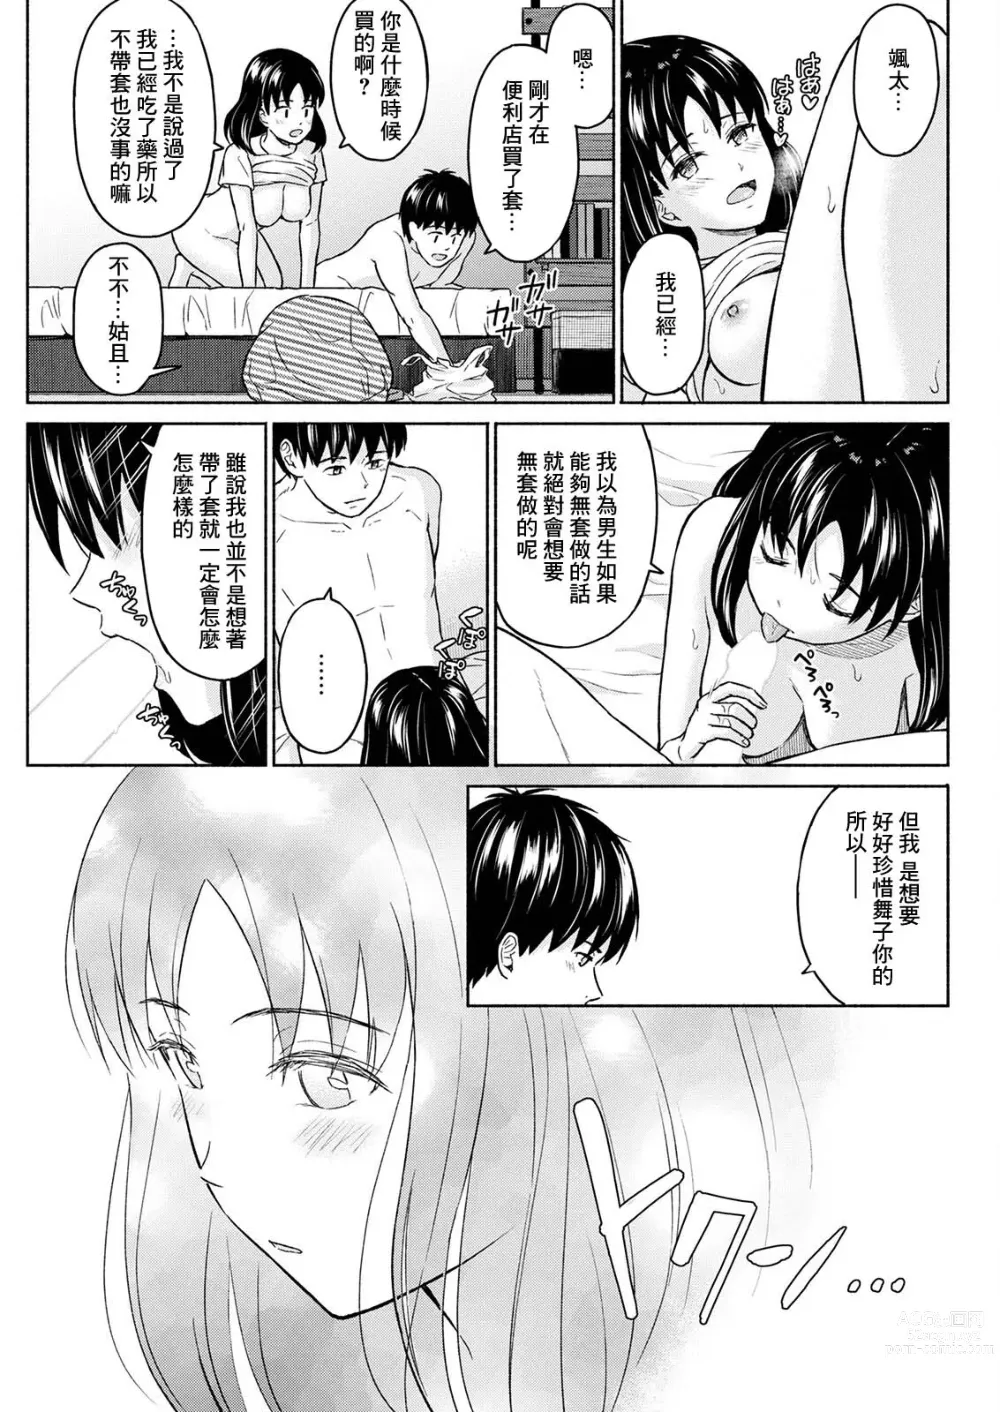 Page 11 of manga Marude Rokugatsu no Kohan o Fuku Kaze no you ni Kouhen